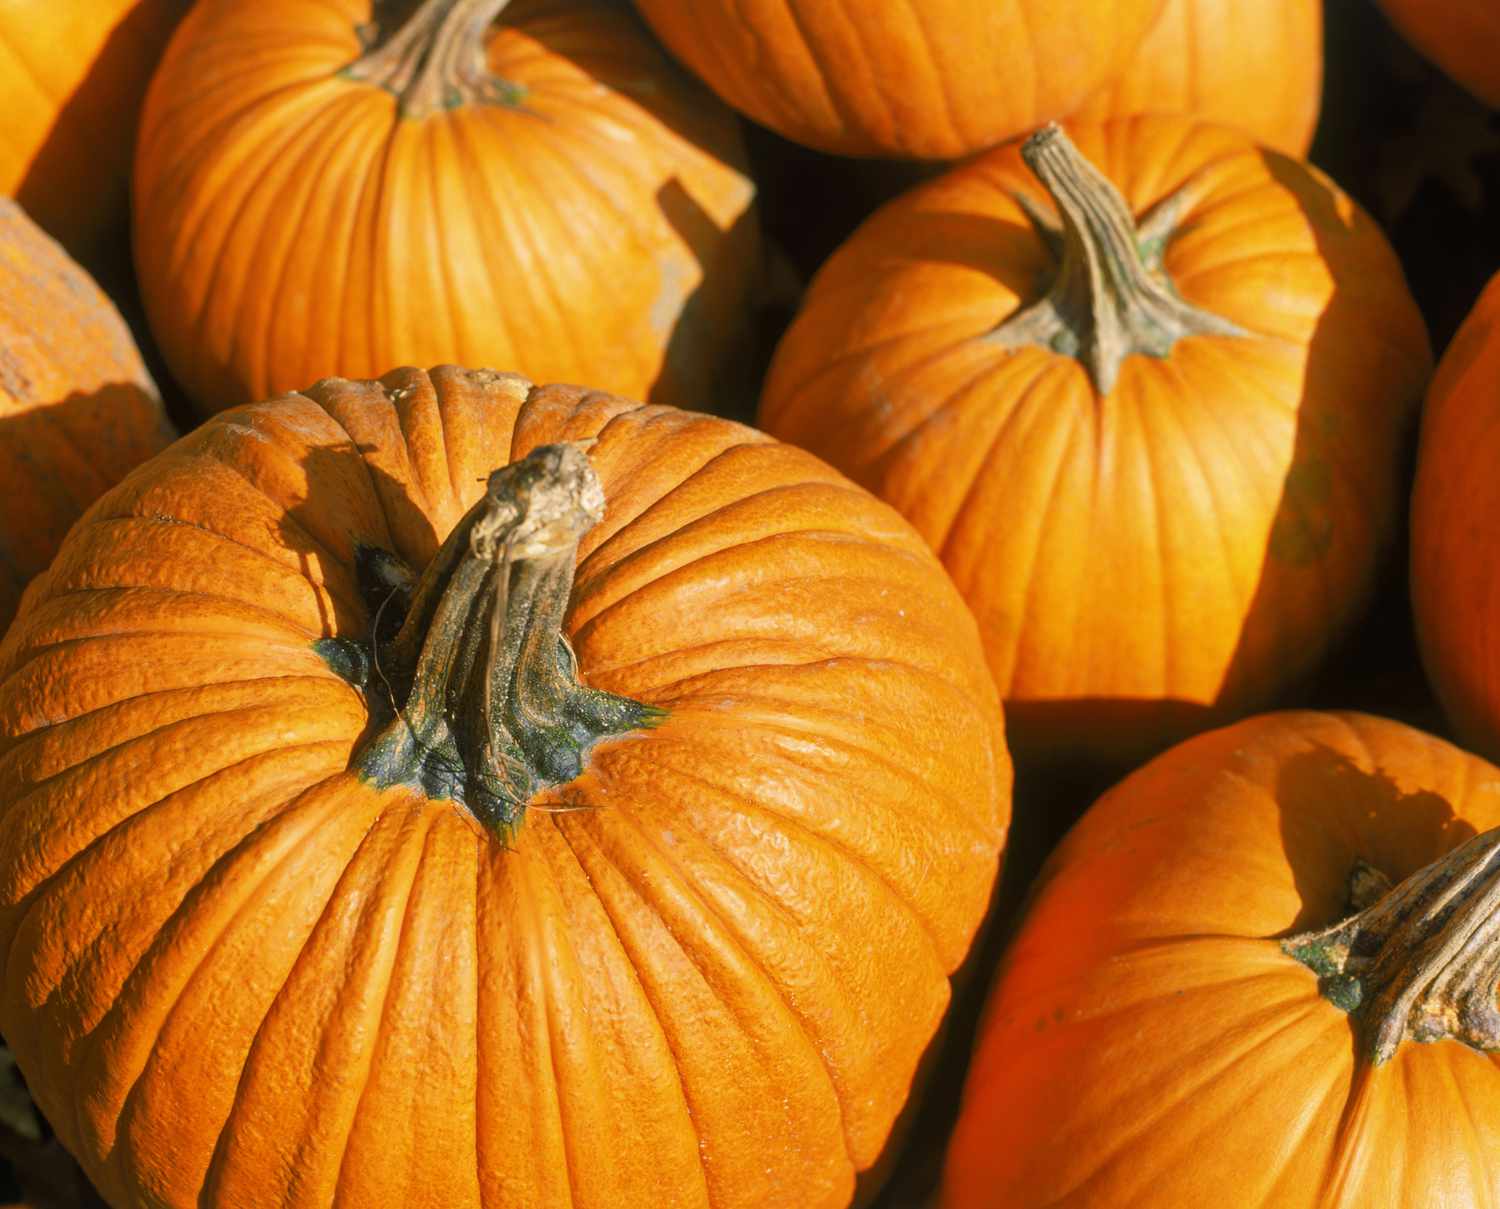 Connecticut field pumpkin